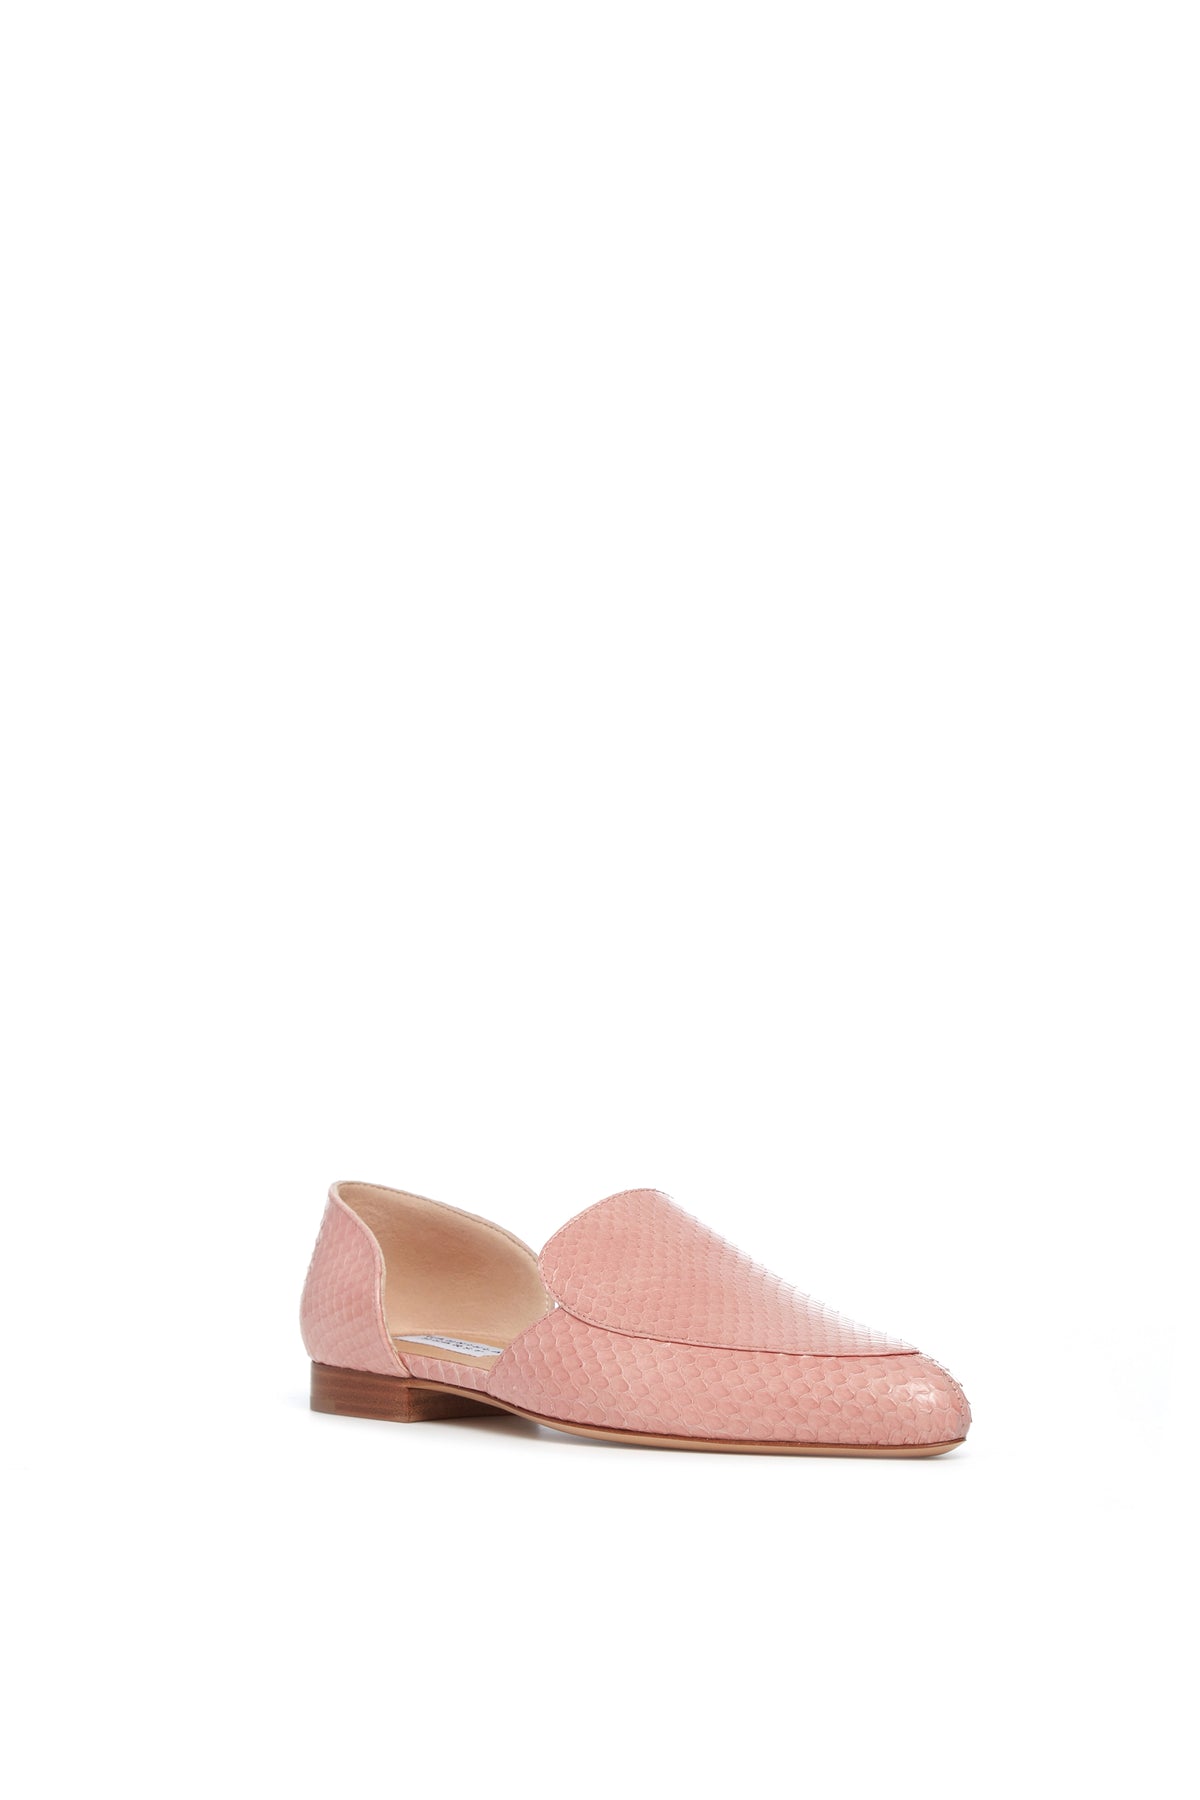 Jax Flat Shoe in Light Pink Snakeskin